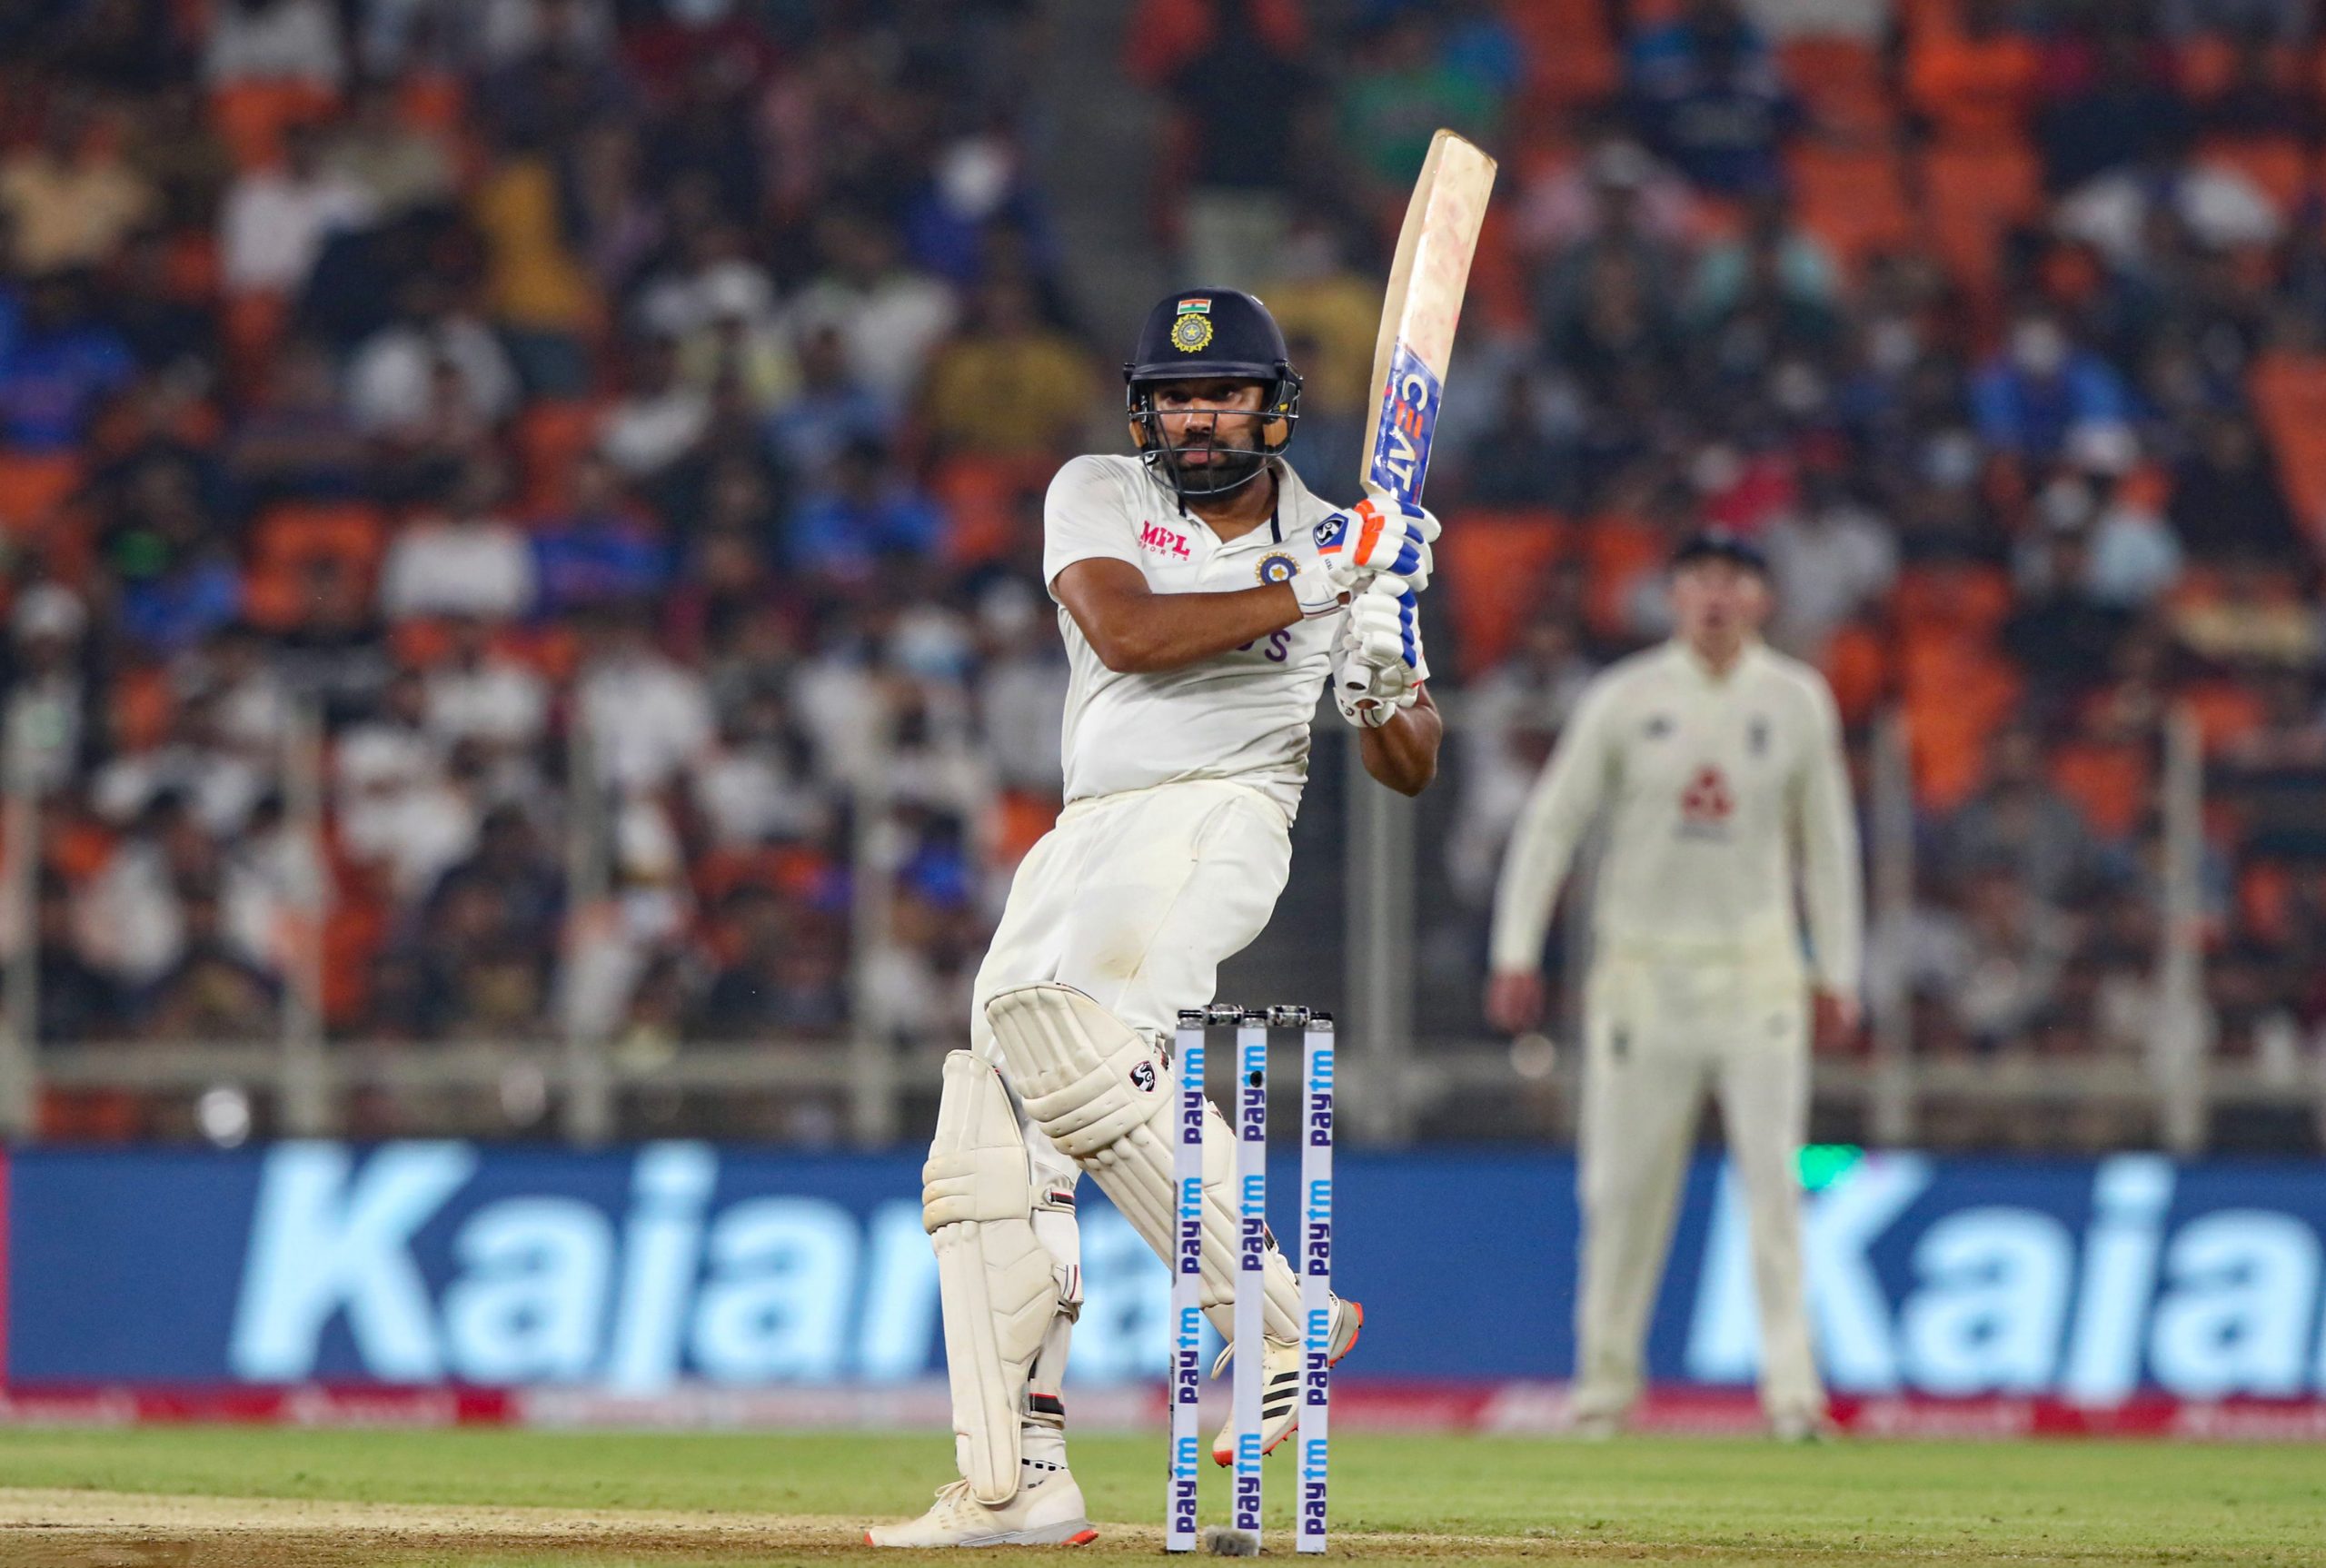 Career-best 8th spot for Rohit Sharma in latest ICC rankings for Test batsmen